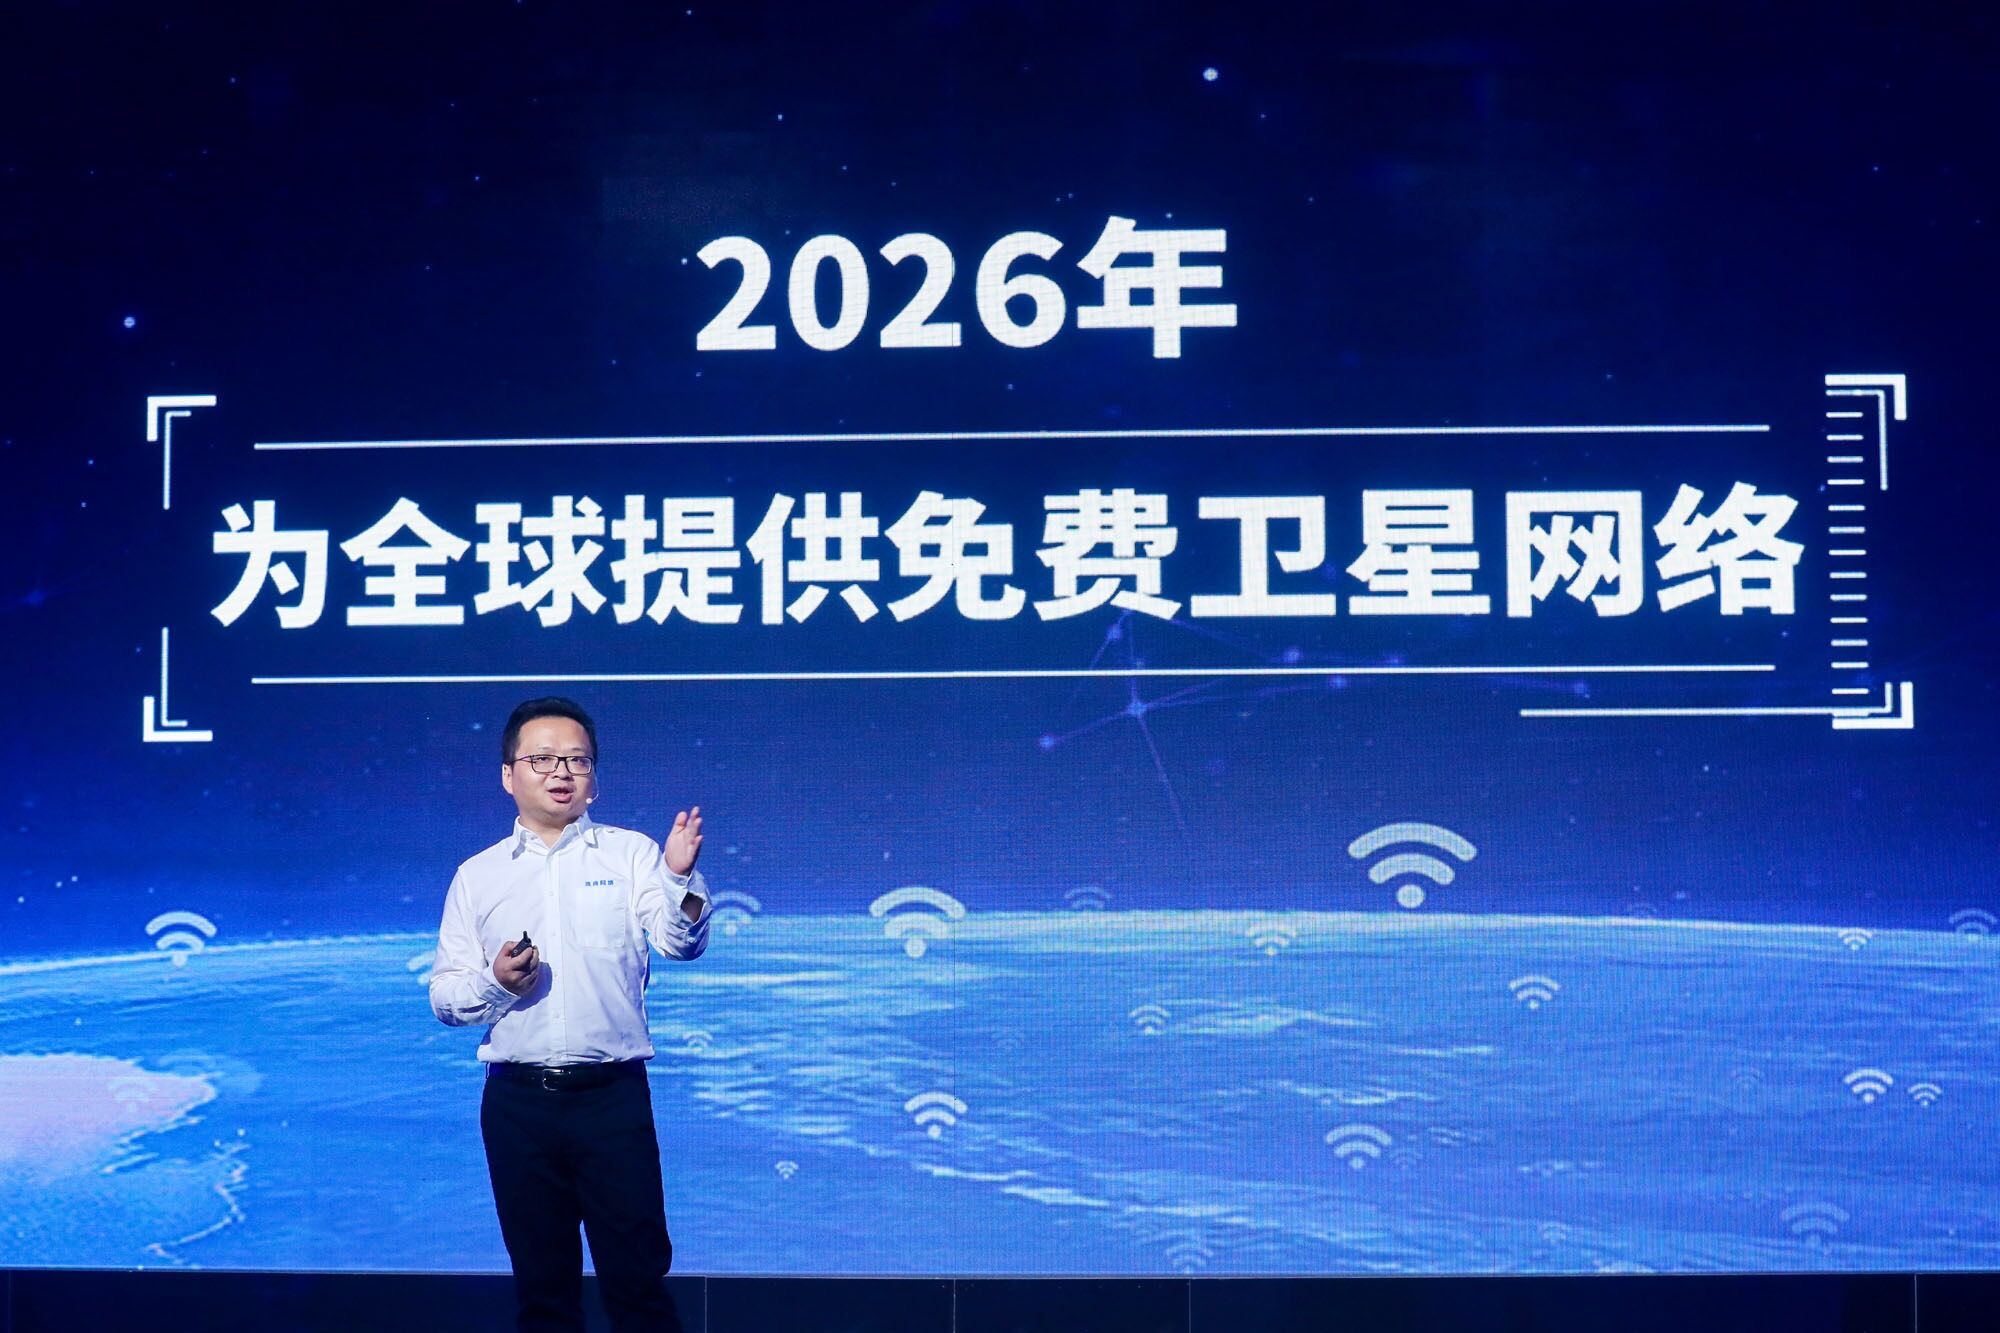 《刚刚，连尚网络宣布 2026年为全球提供免费卫星网络》